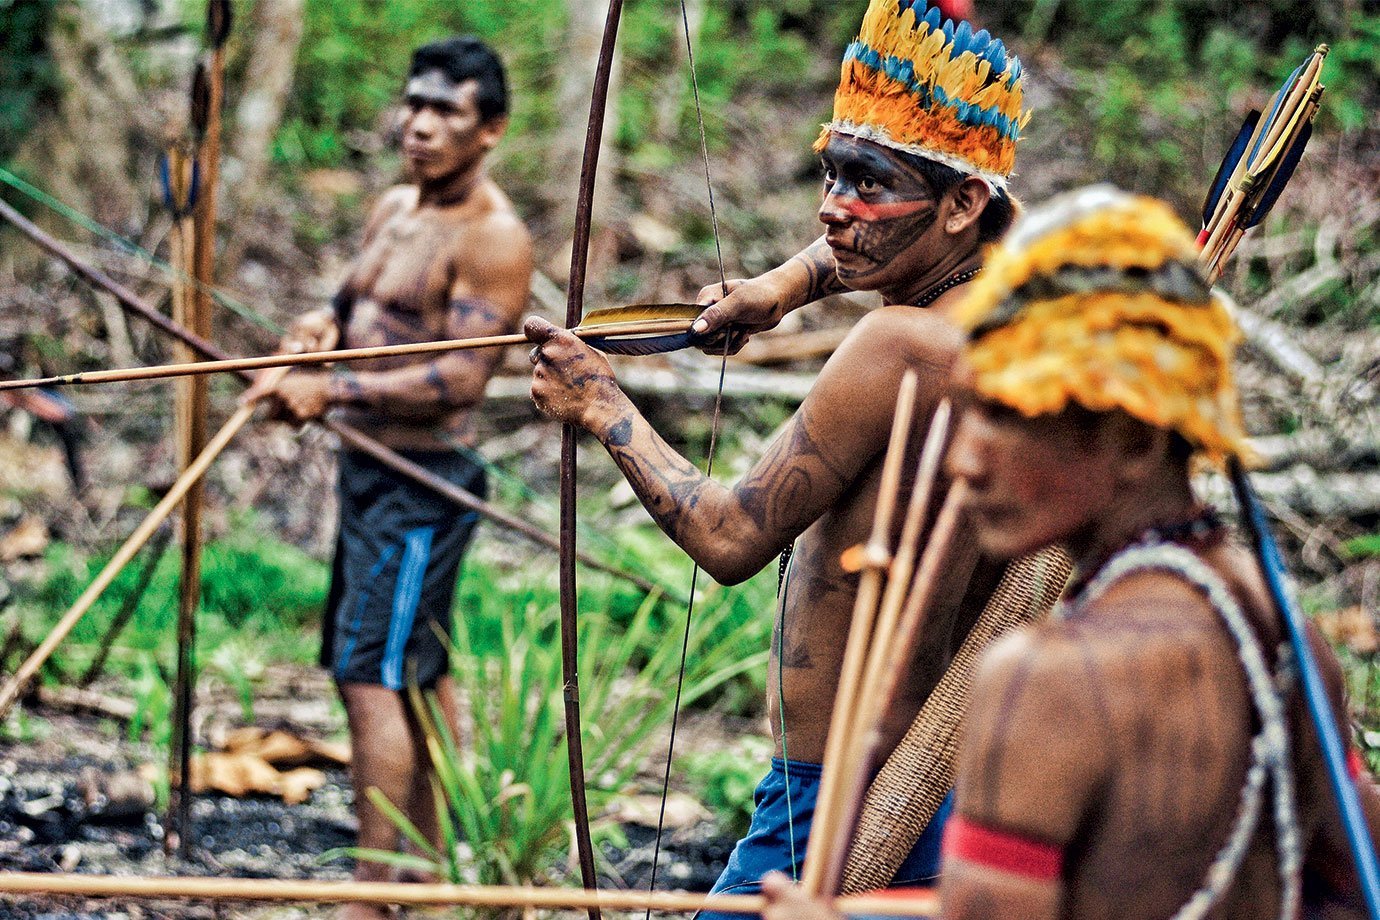 Índios na Amazônia: as terras indígenas se tornaram alvo dos madeireiros ilegais